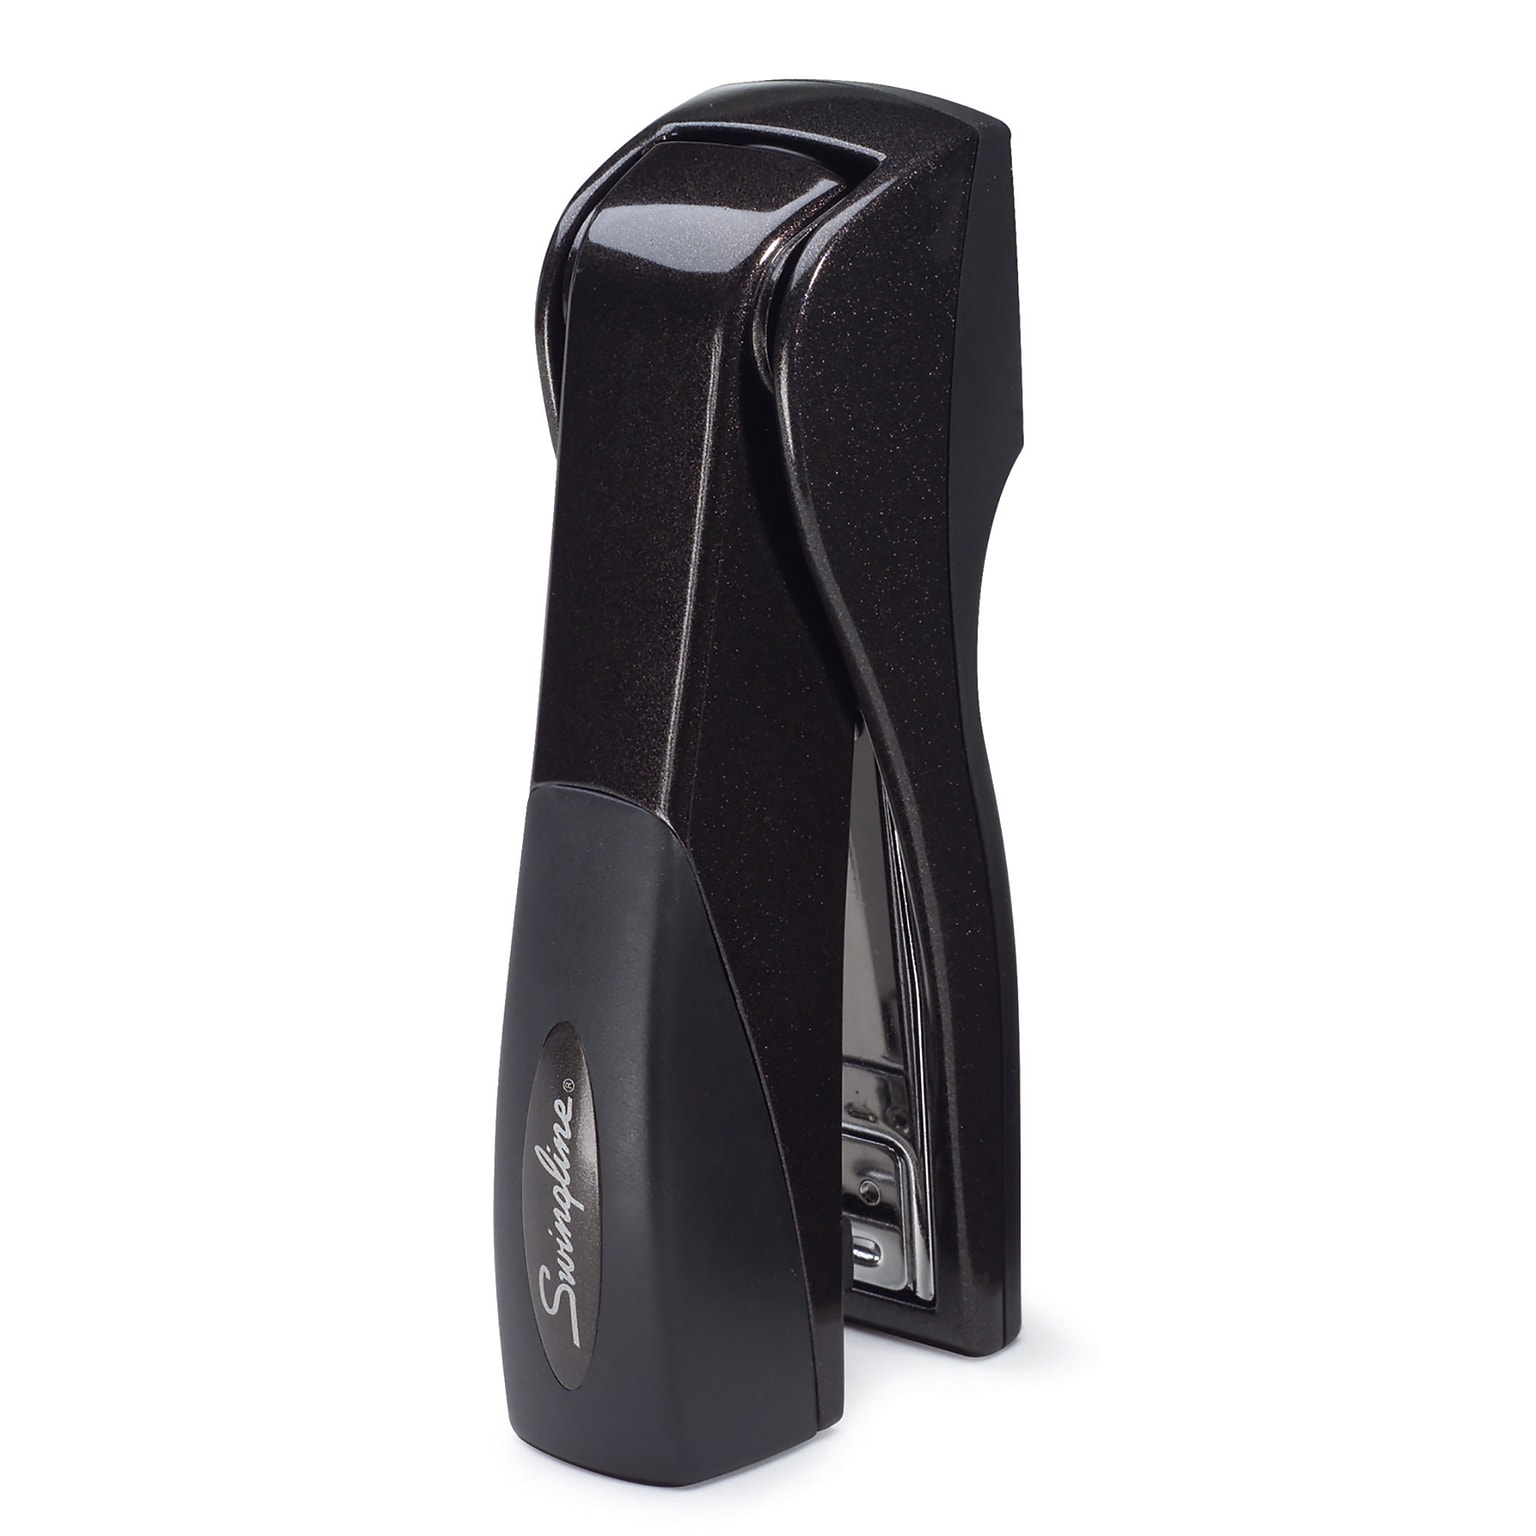 Swingline Optima Grip Desktop Stapler, 25-Sheet Capacity, Staples Included, Black (87815)